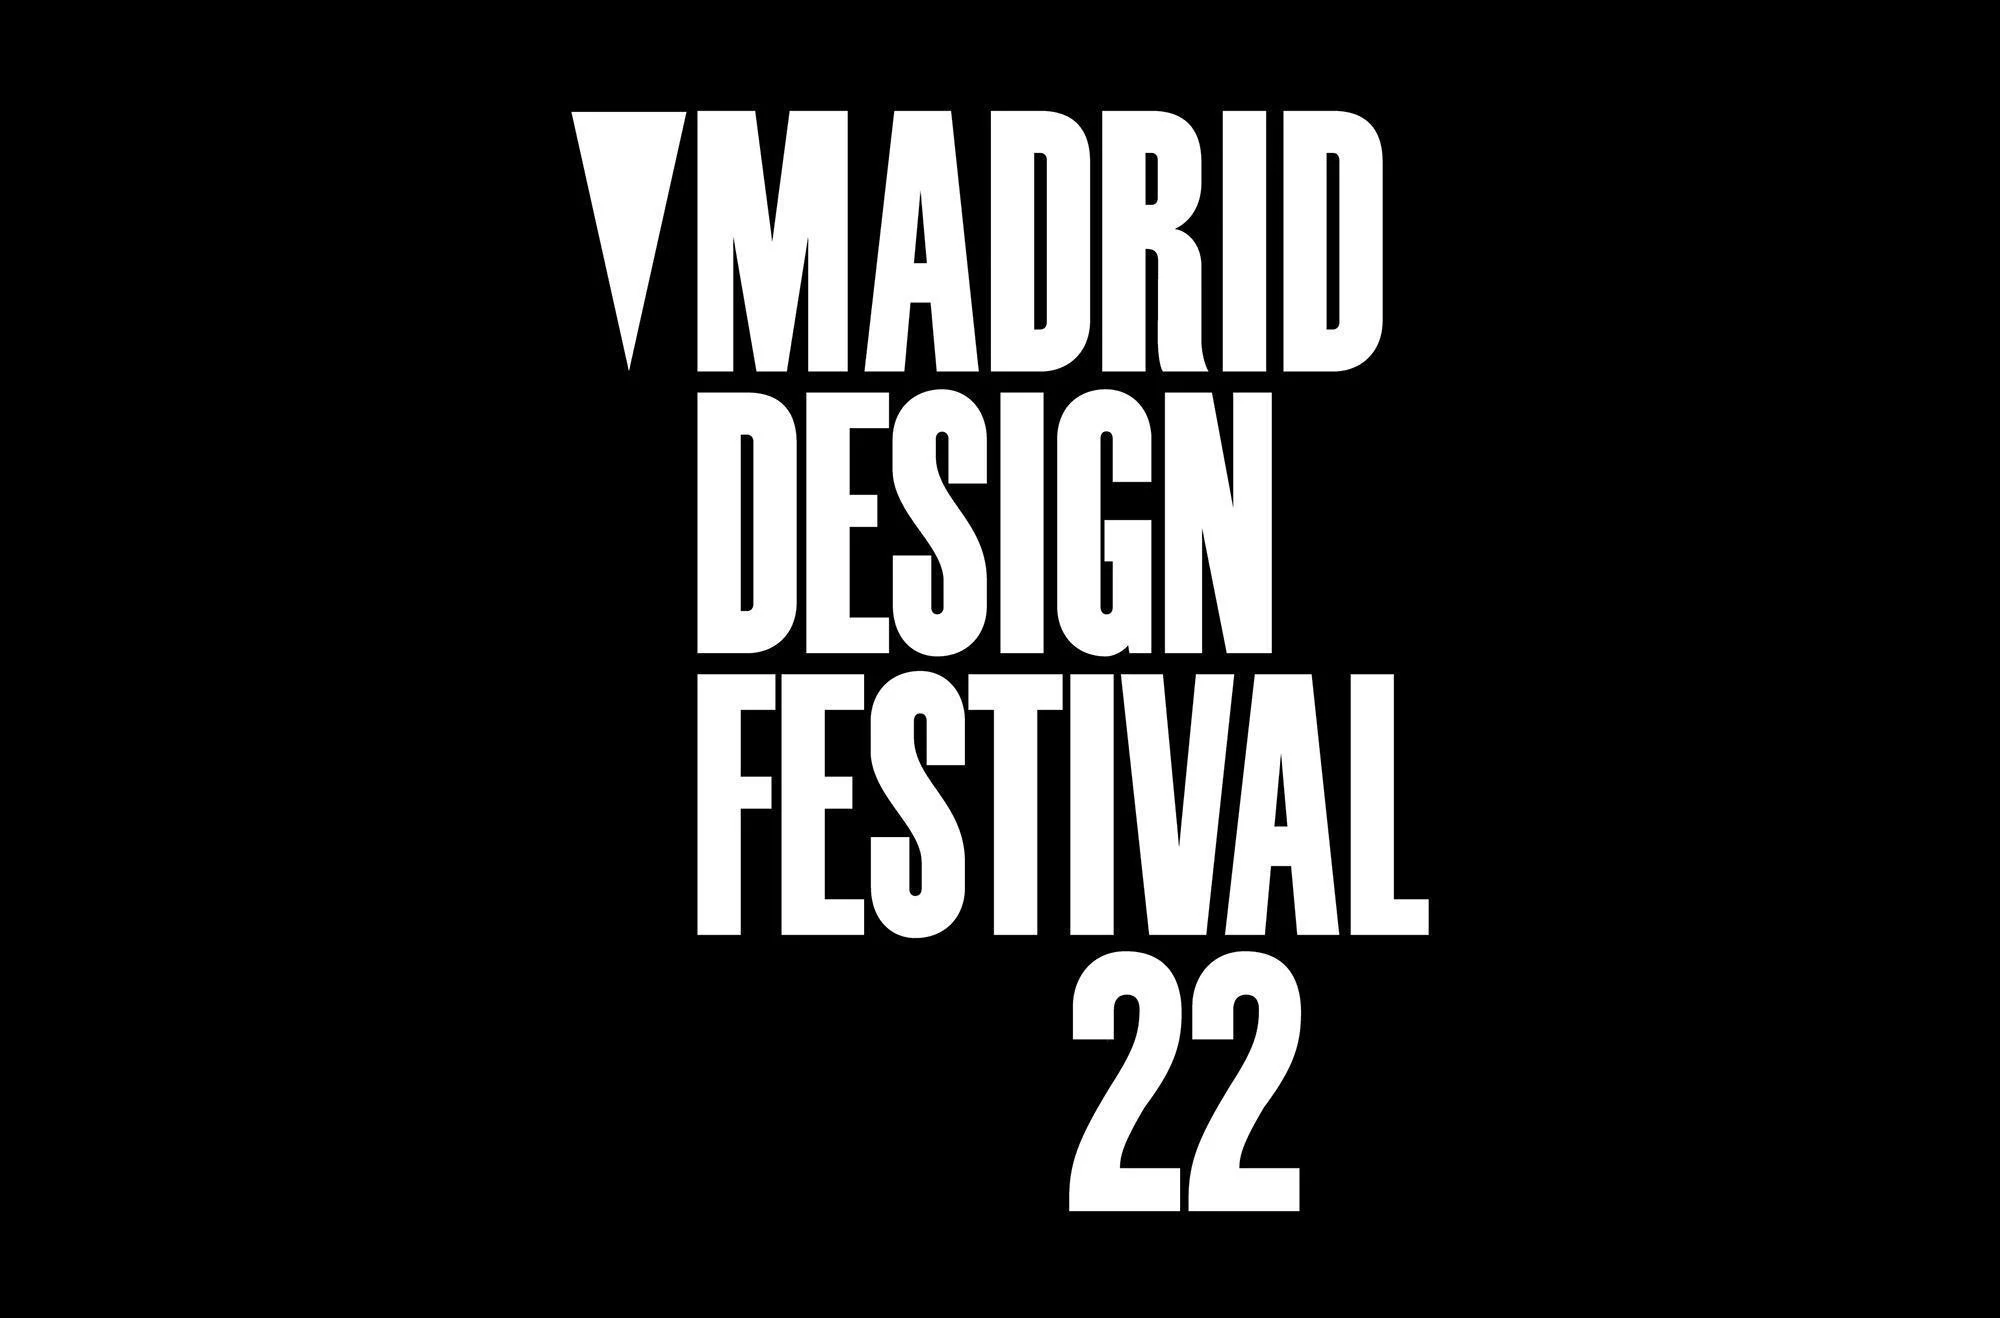 No hay que perderse Madrid Design Festival